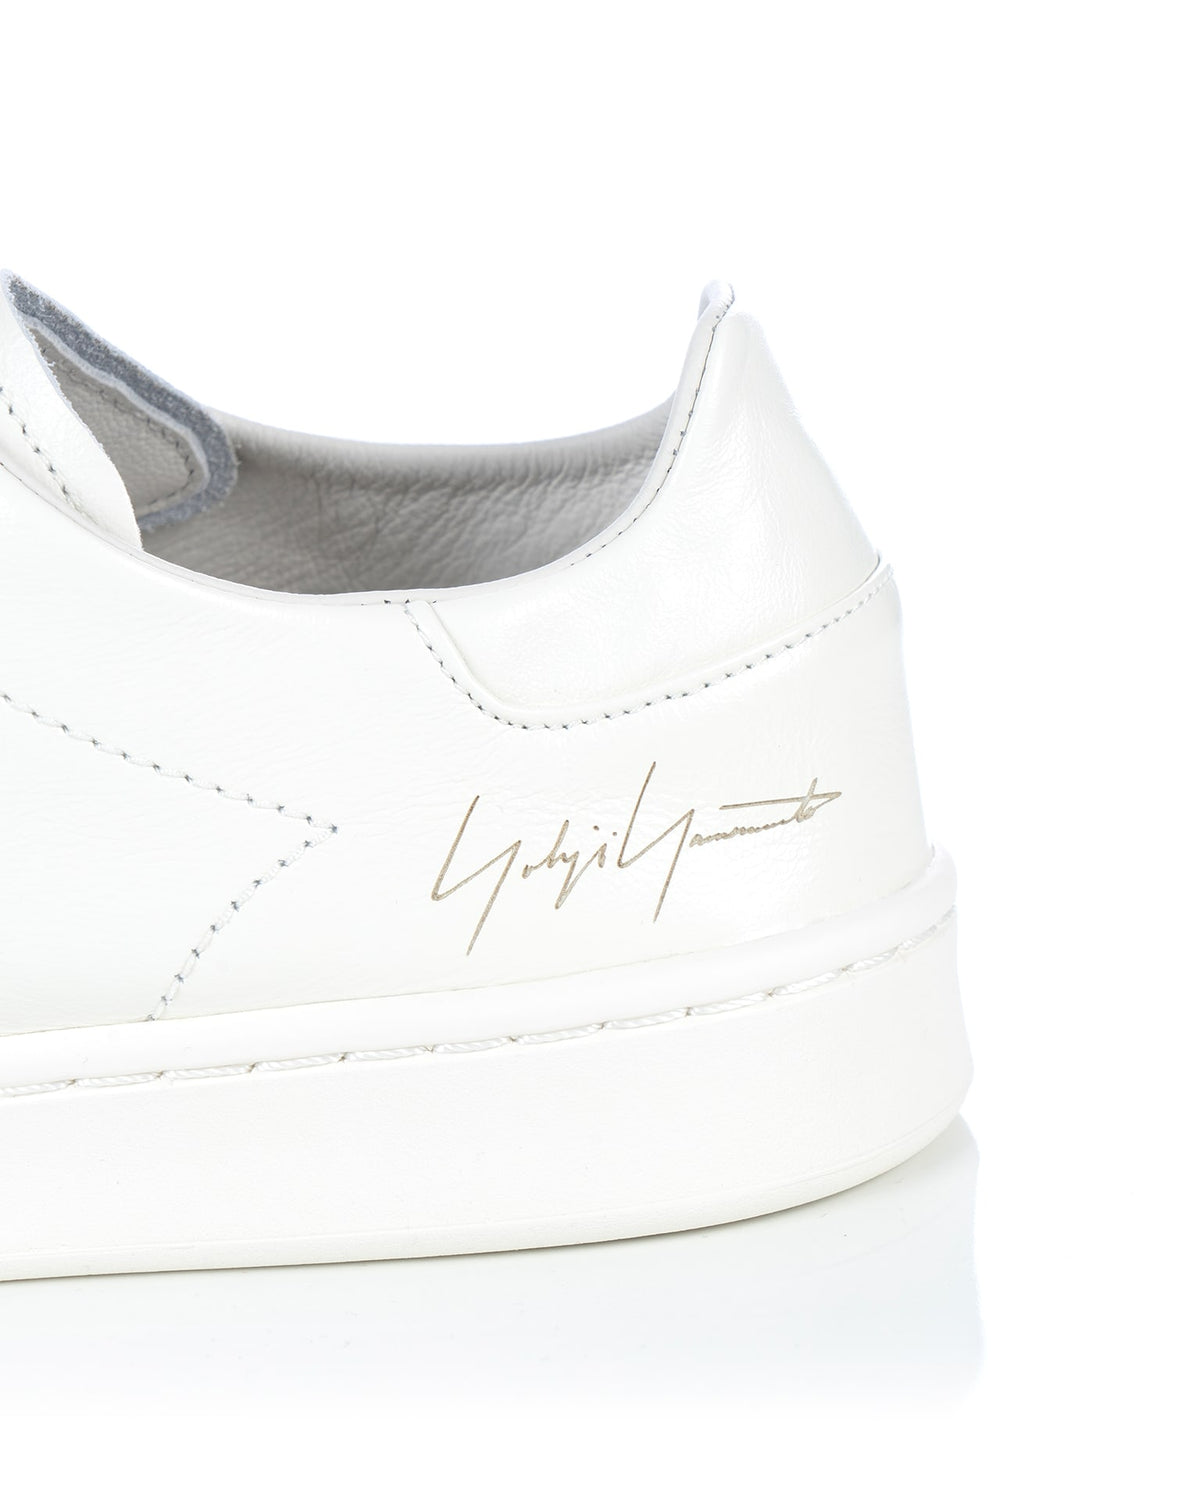 adidas Y-3 | Stan Smith Off White - IG4037 - Concrete